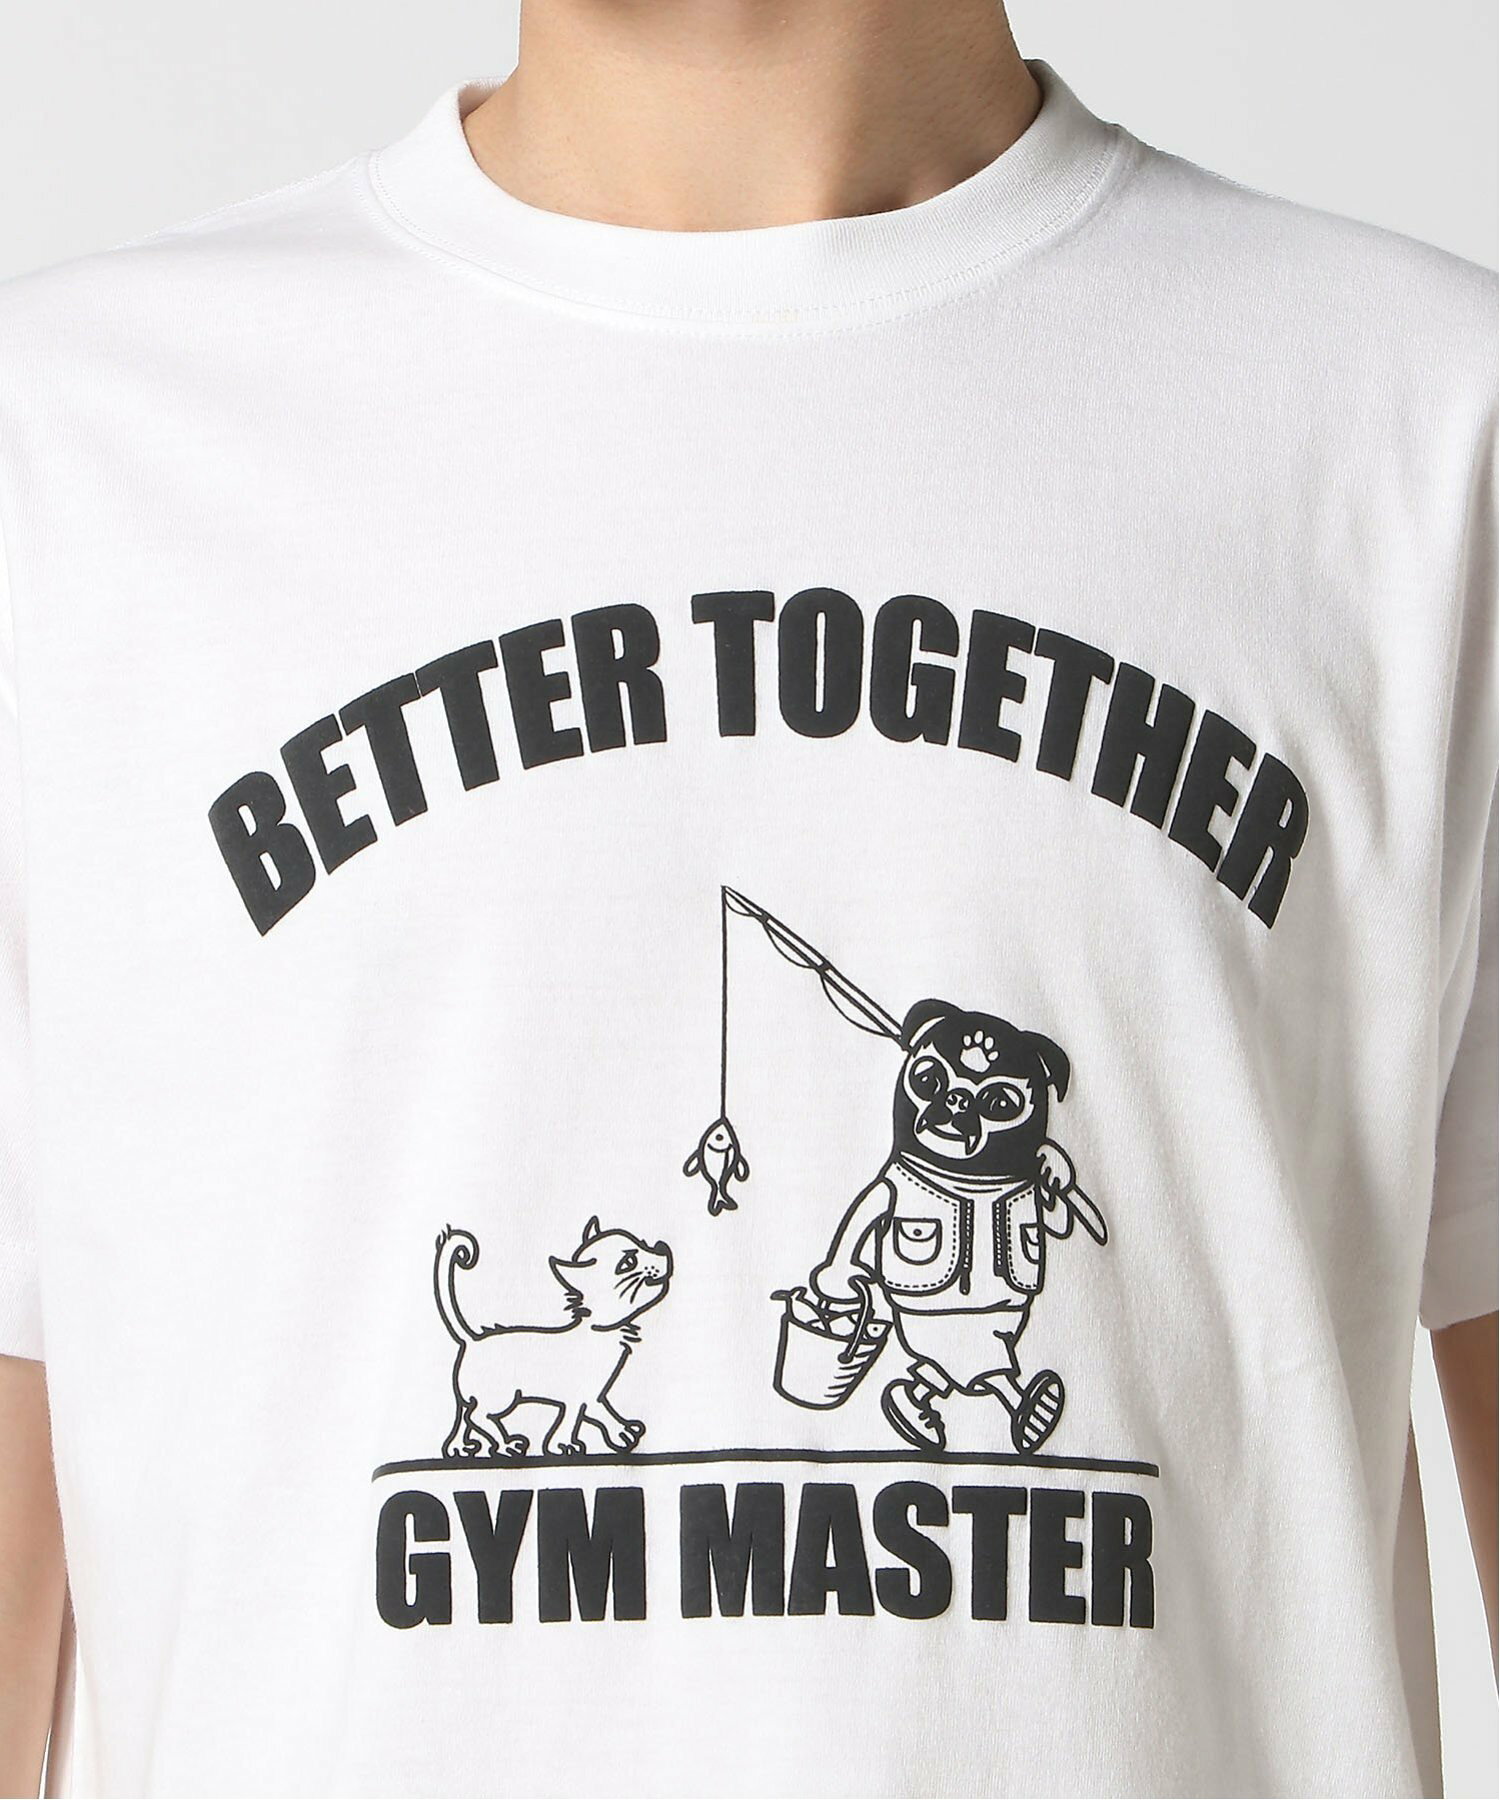 gym master/(U)5.6oz BETTER TOGETHER Tee